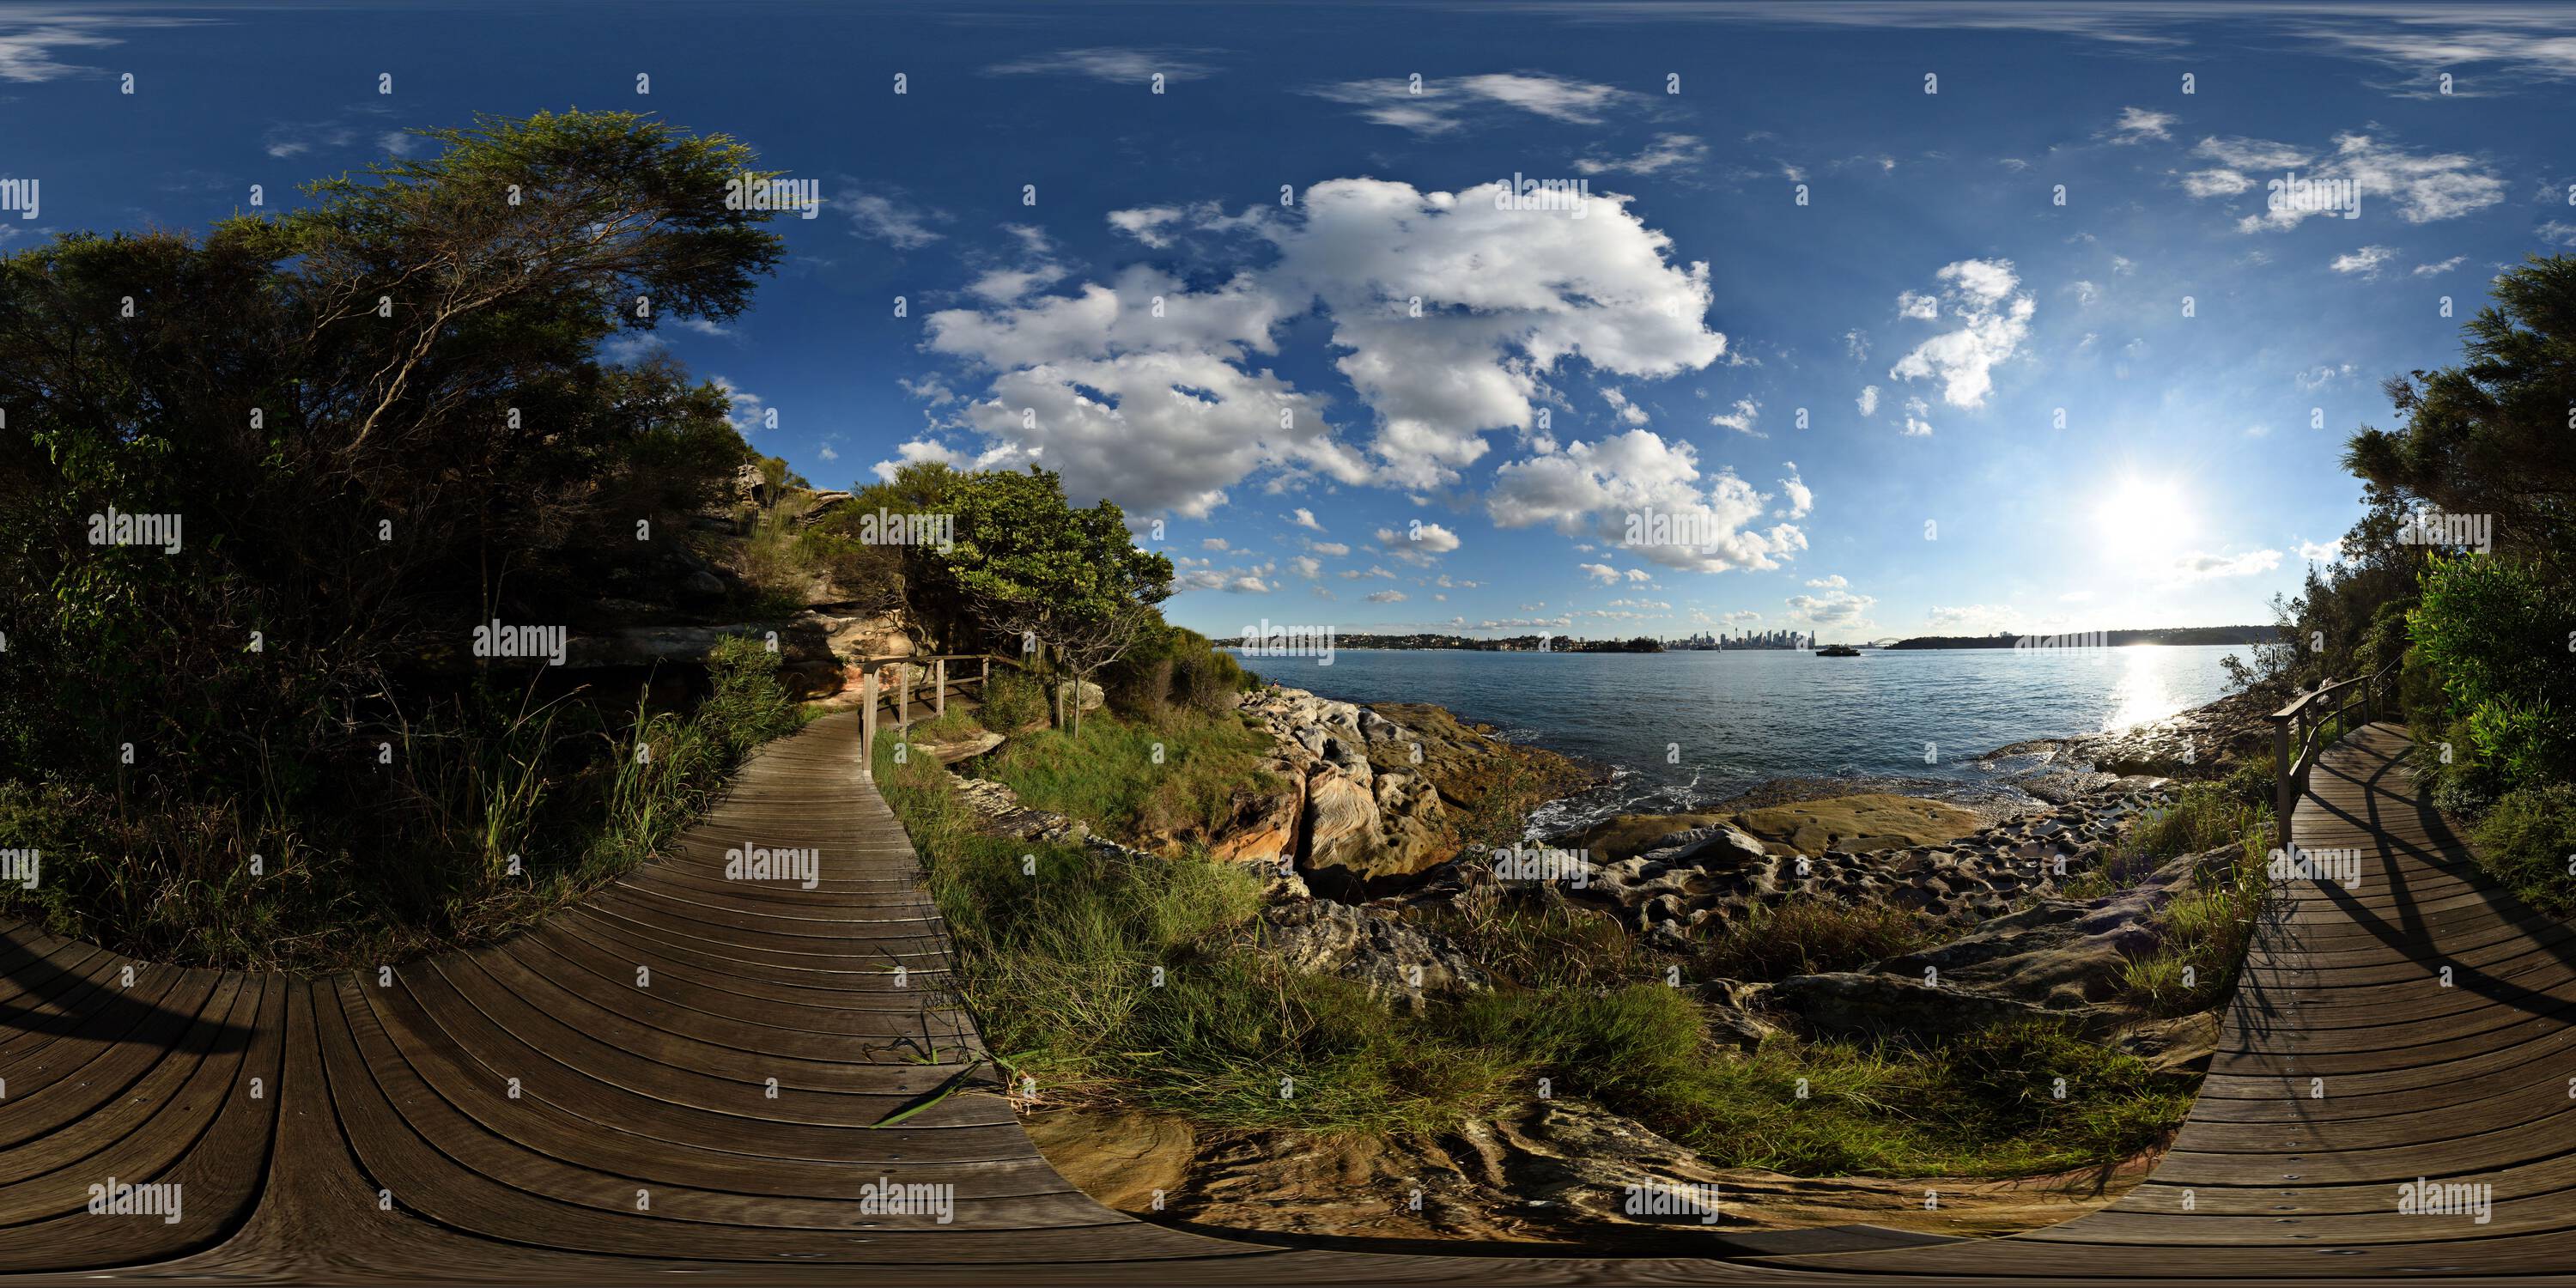 360 Grad Panorama Ansicht von Sandstein und Wasser - Blick auf den Hafen vom Hermitage Foreshore Track, Sydney Harbour National Park, 360° Panorama, Sydney, Australien